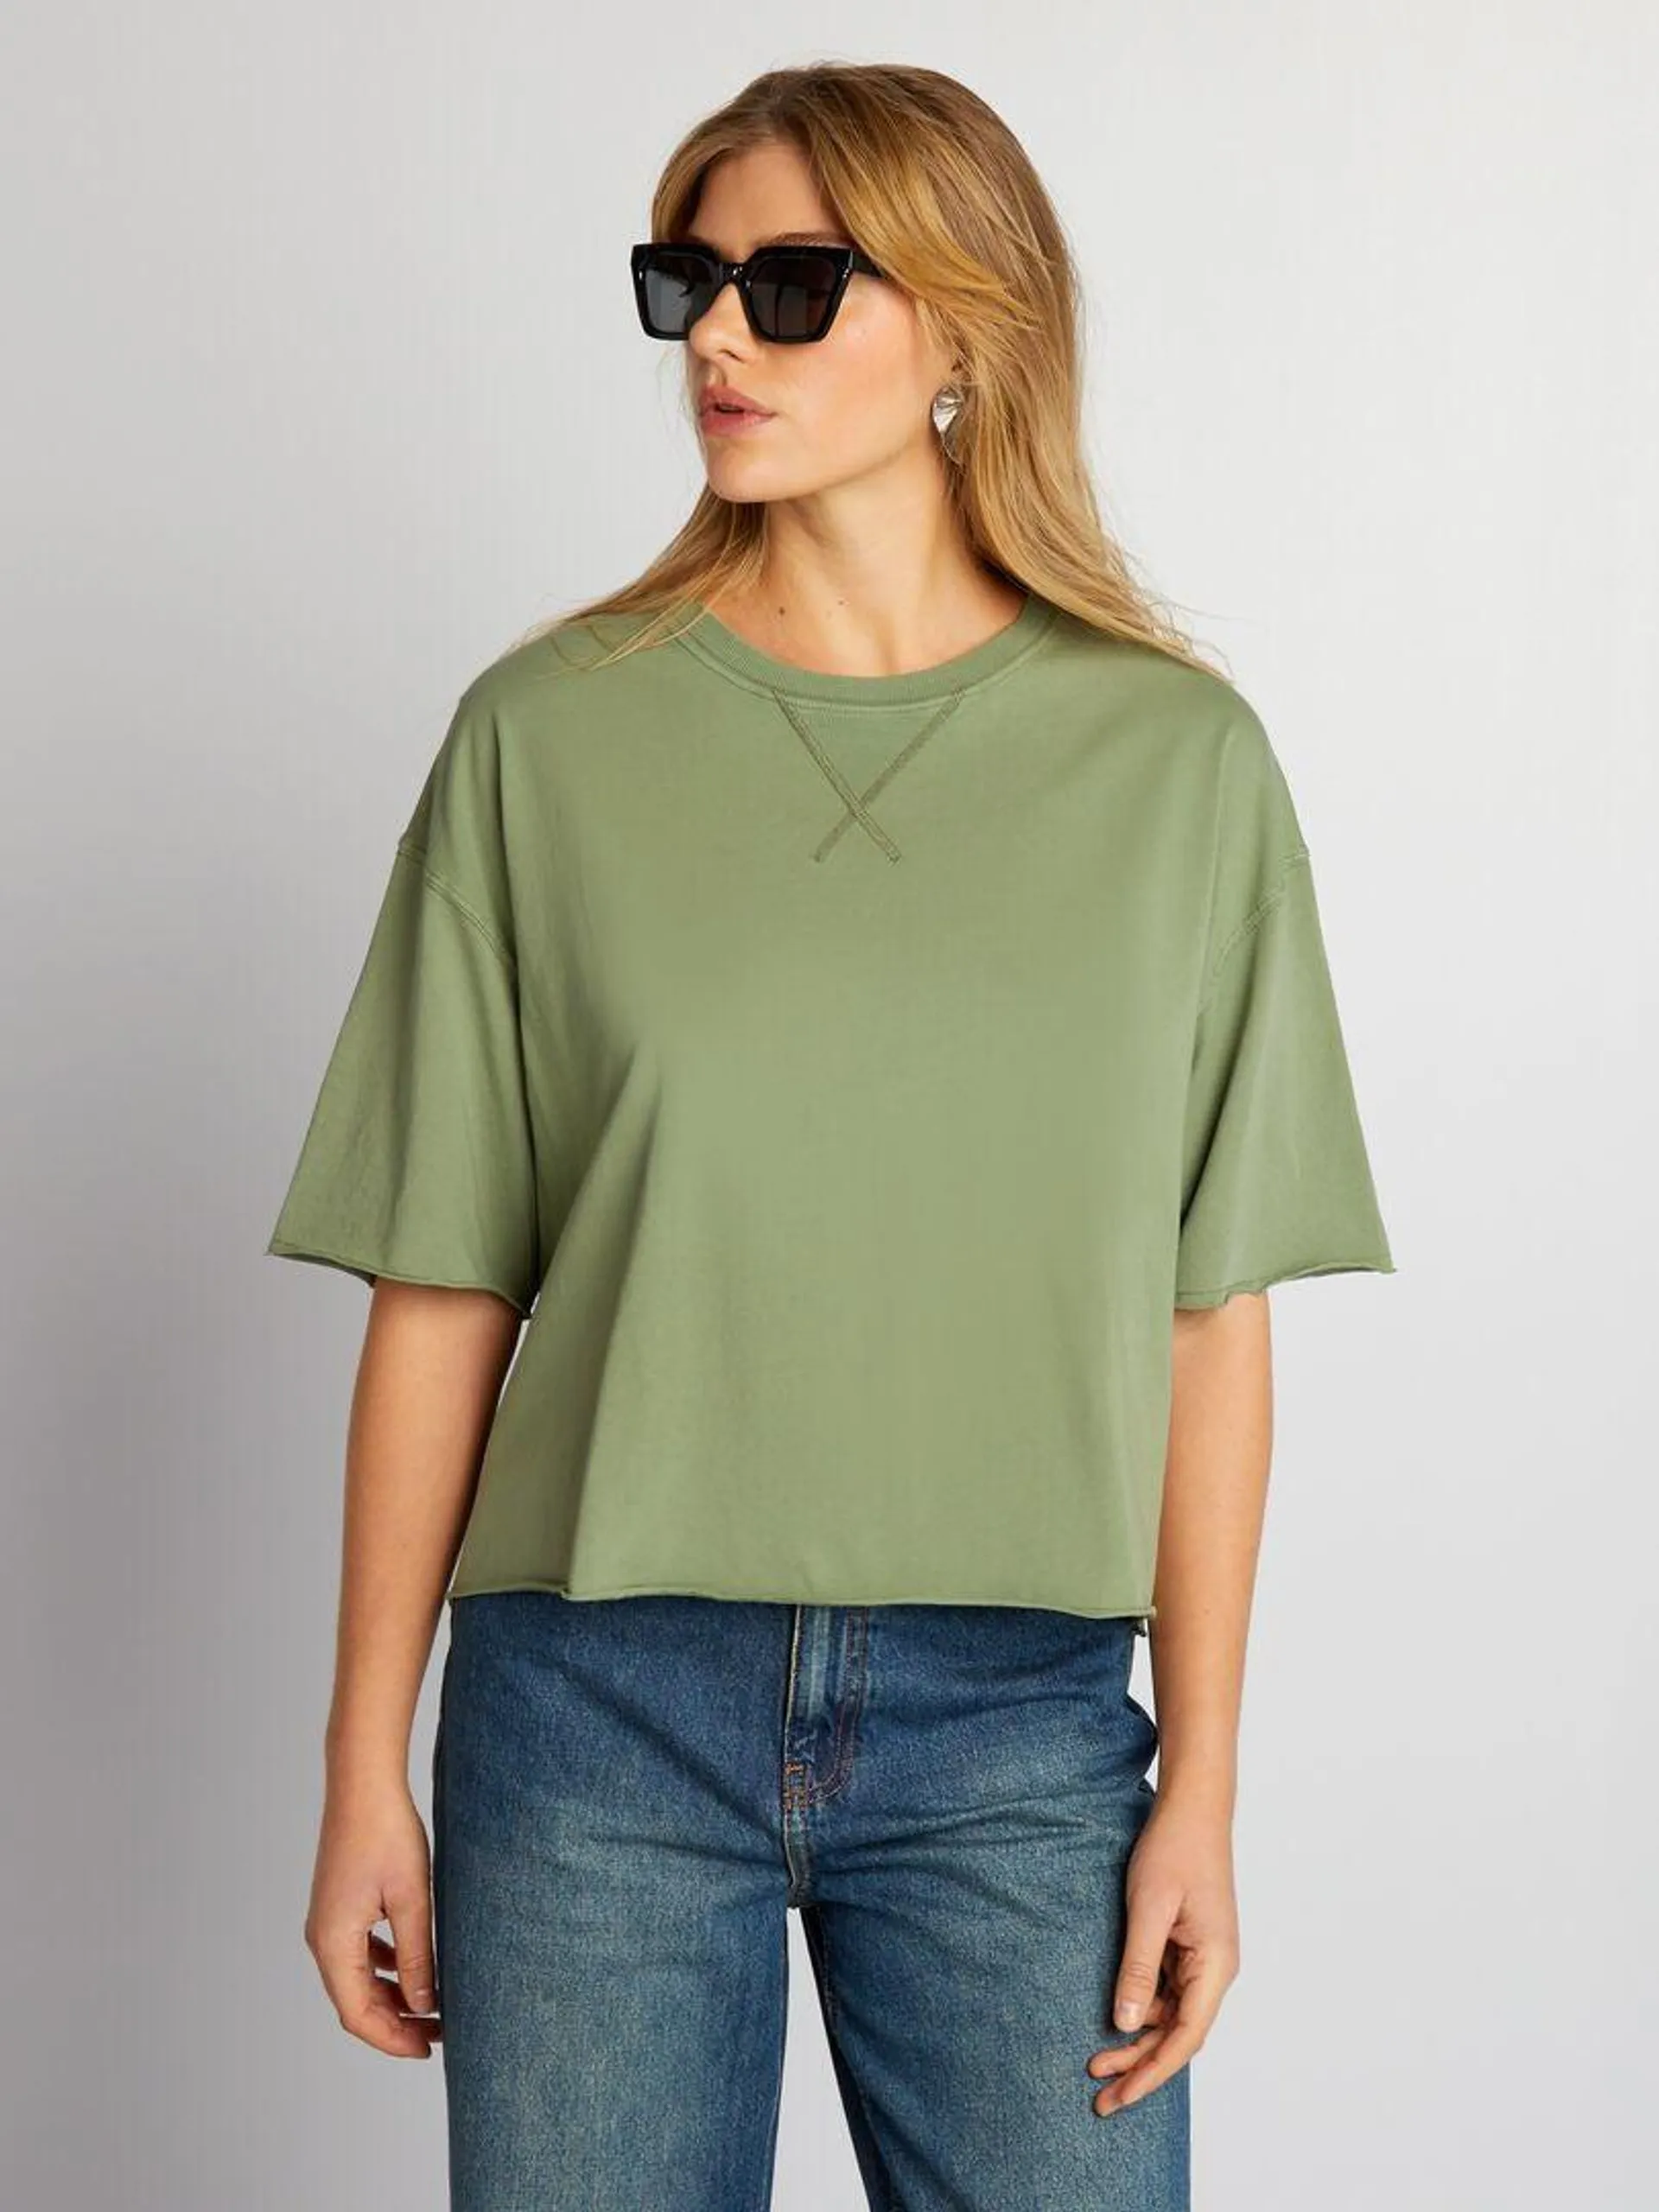 T-shirt in cotone con giromanica sceso - verde